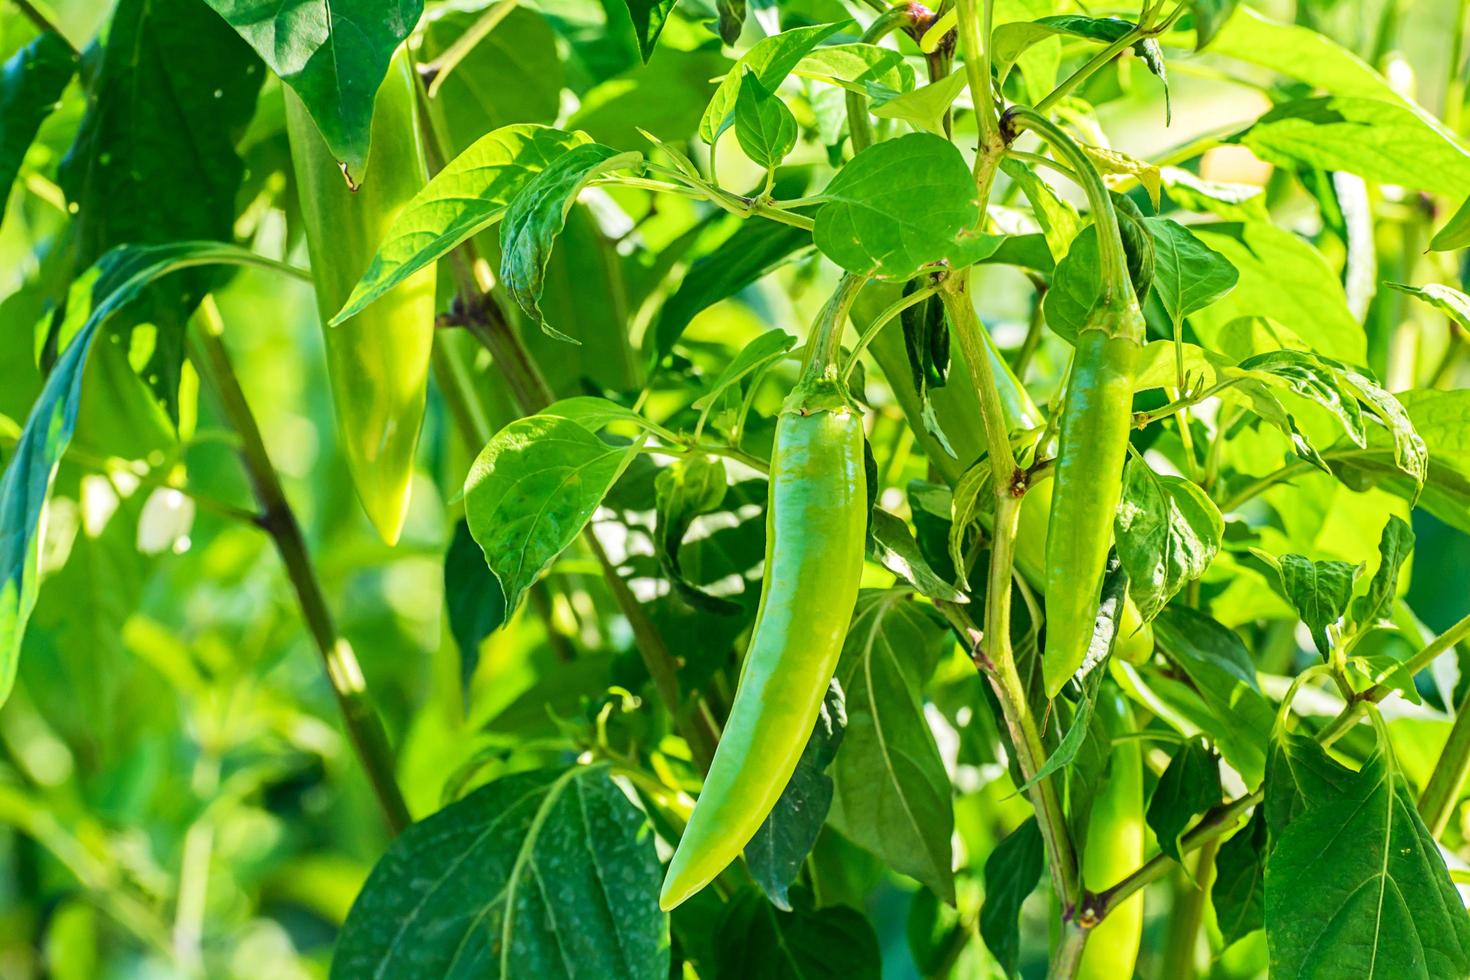 groene chili peper groeit in de tuin. foto